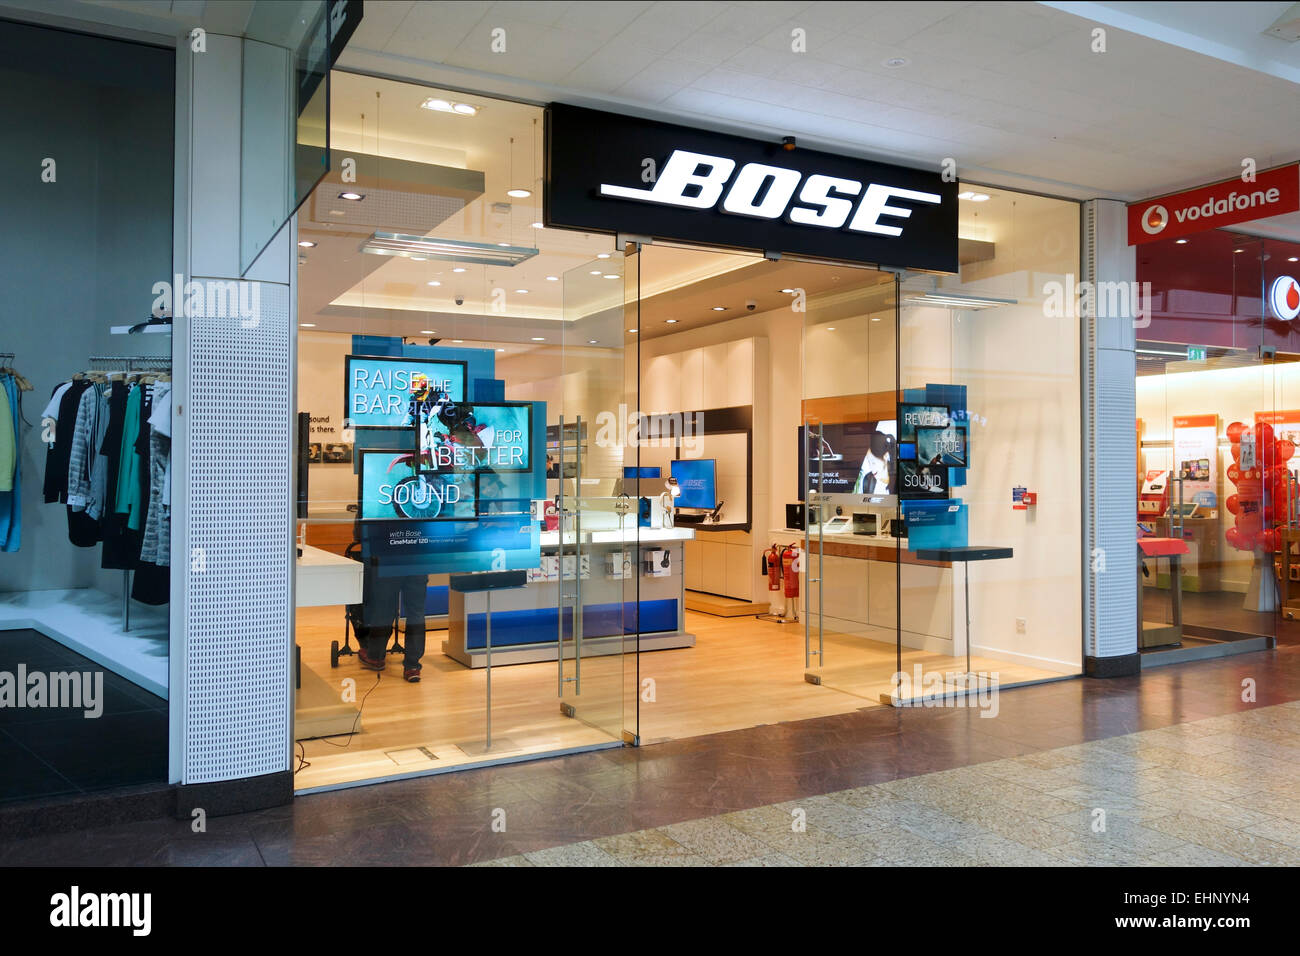 Bose shop -Fotos und -Bildmaterial in hoher Auflösung – Alamy